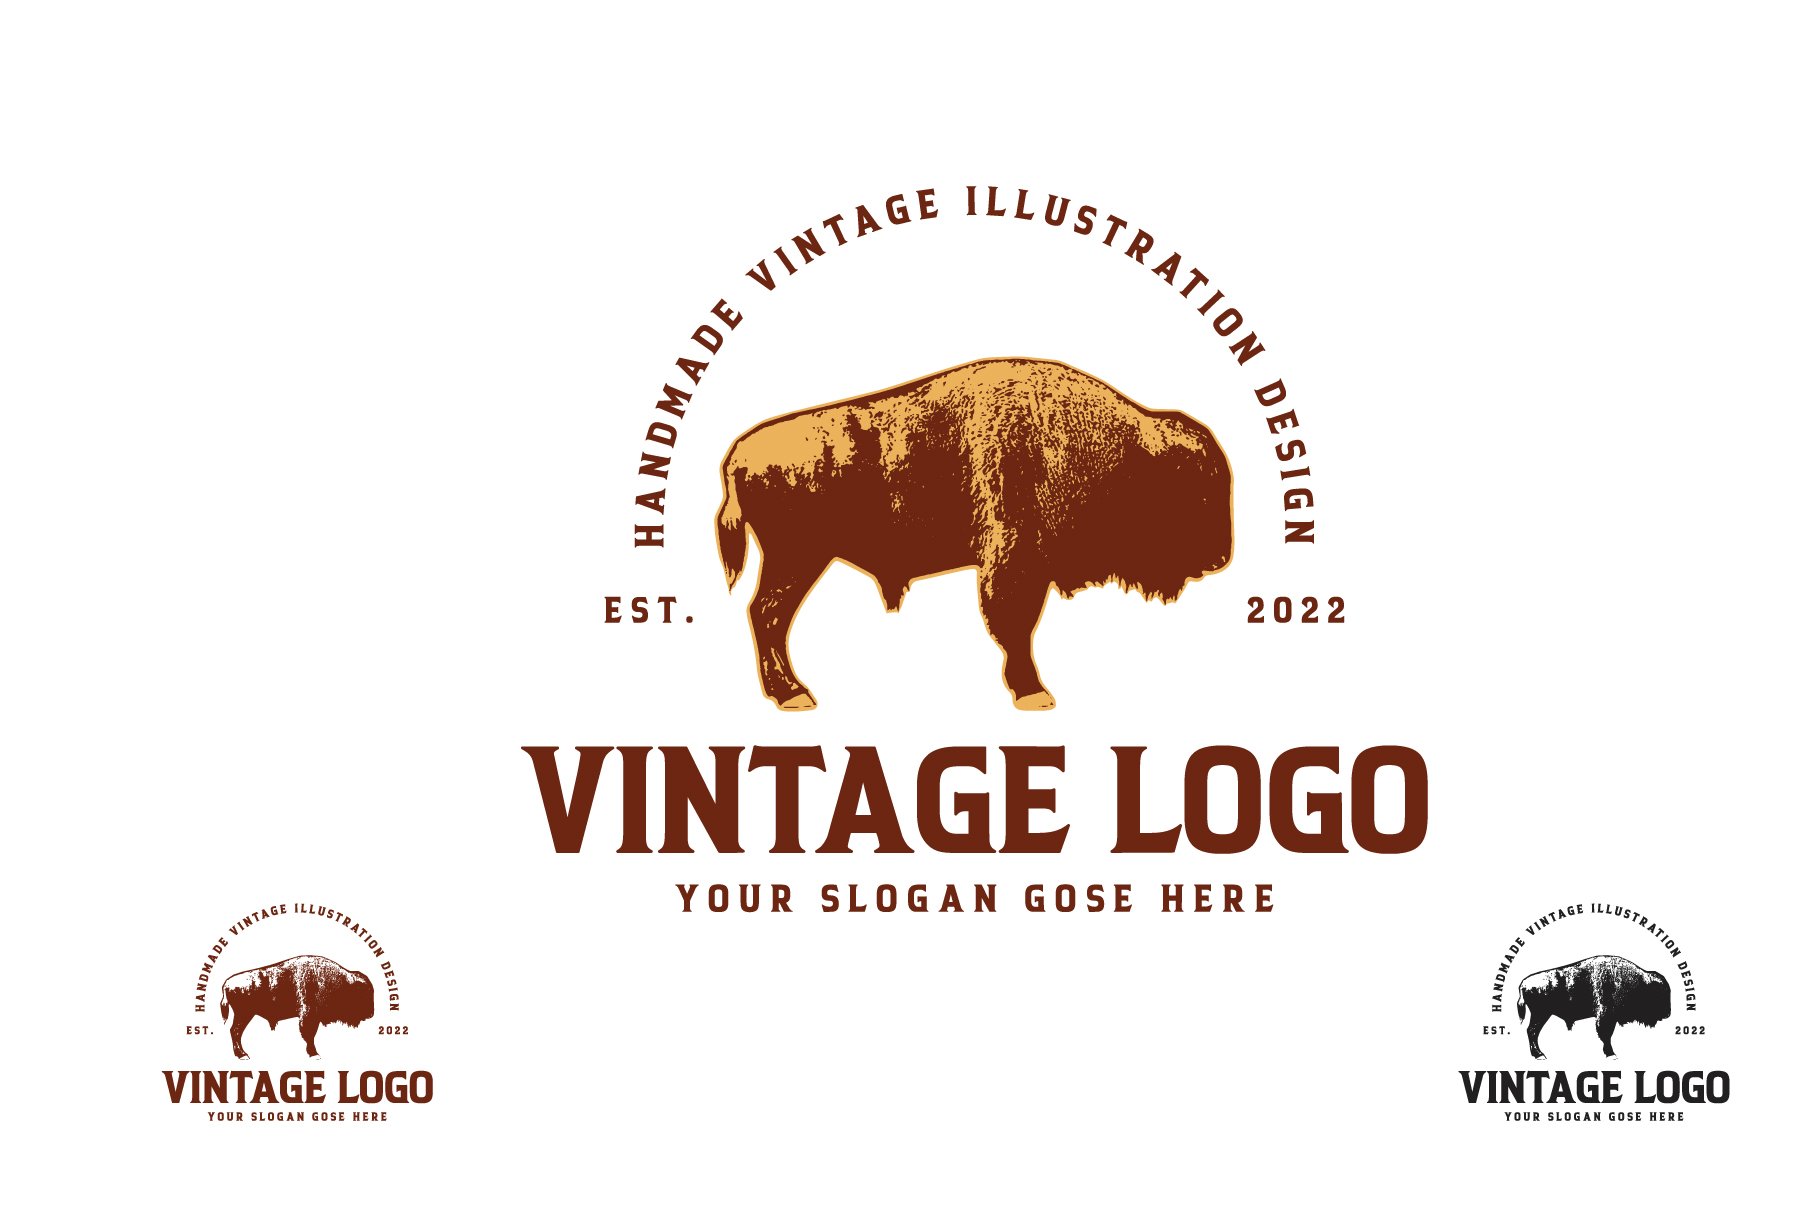 Vintage Bison Logo Design cover image.